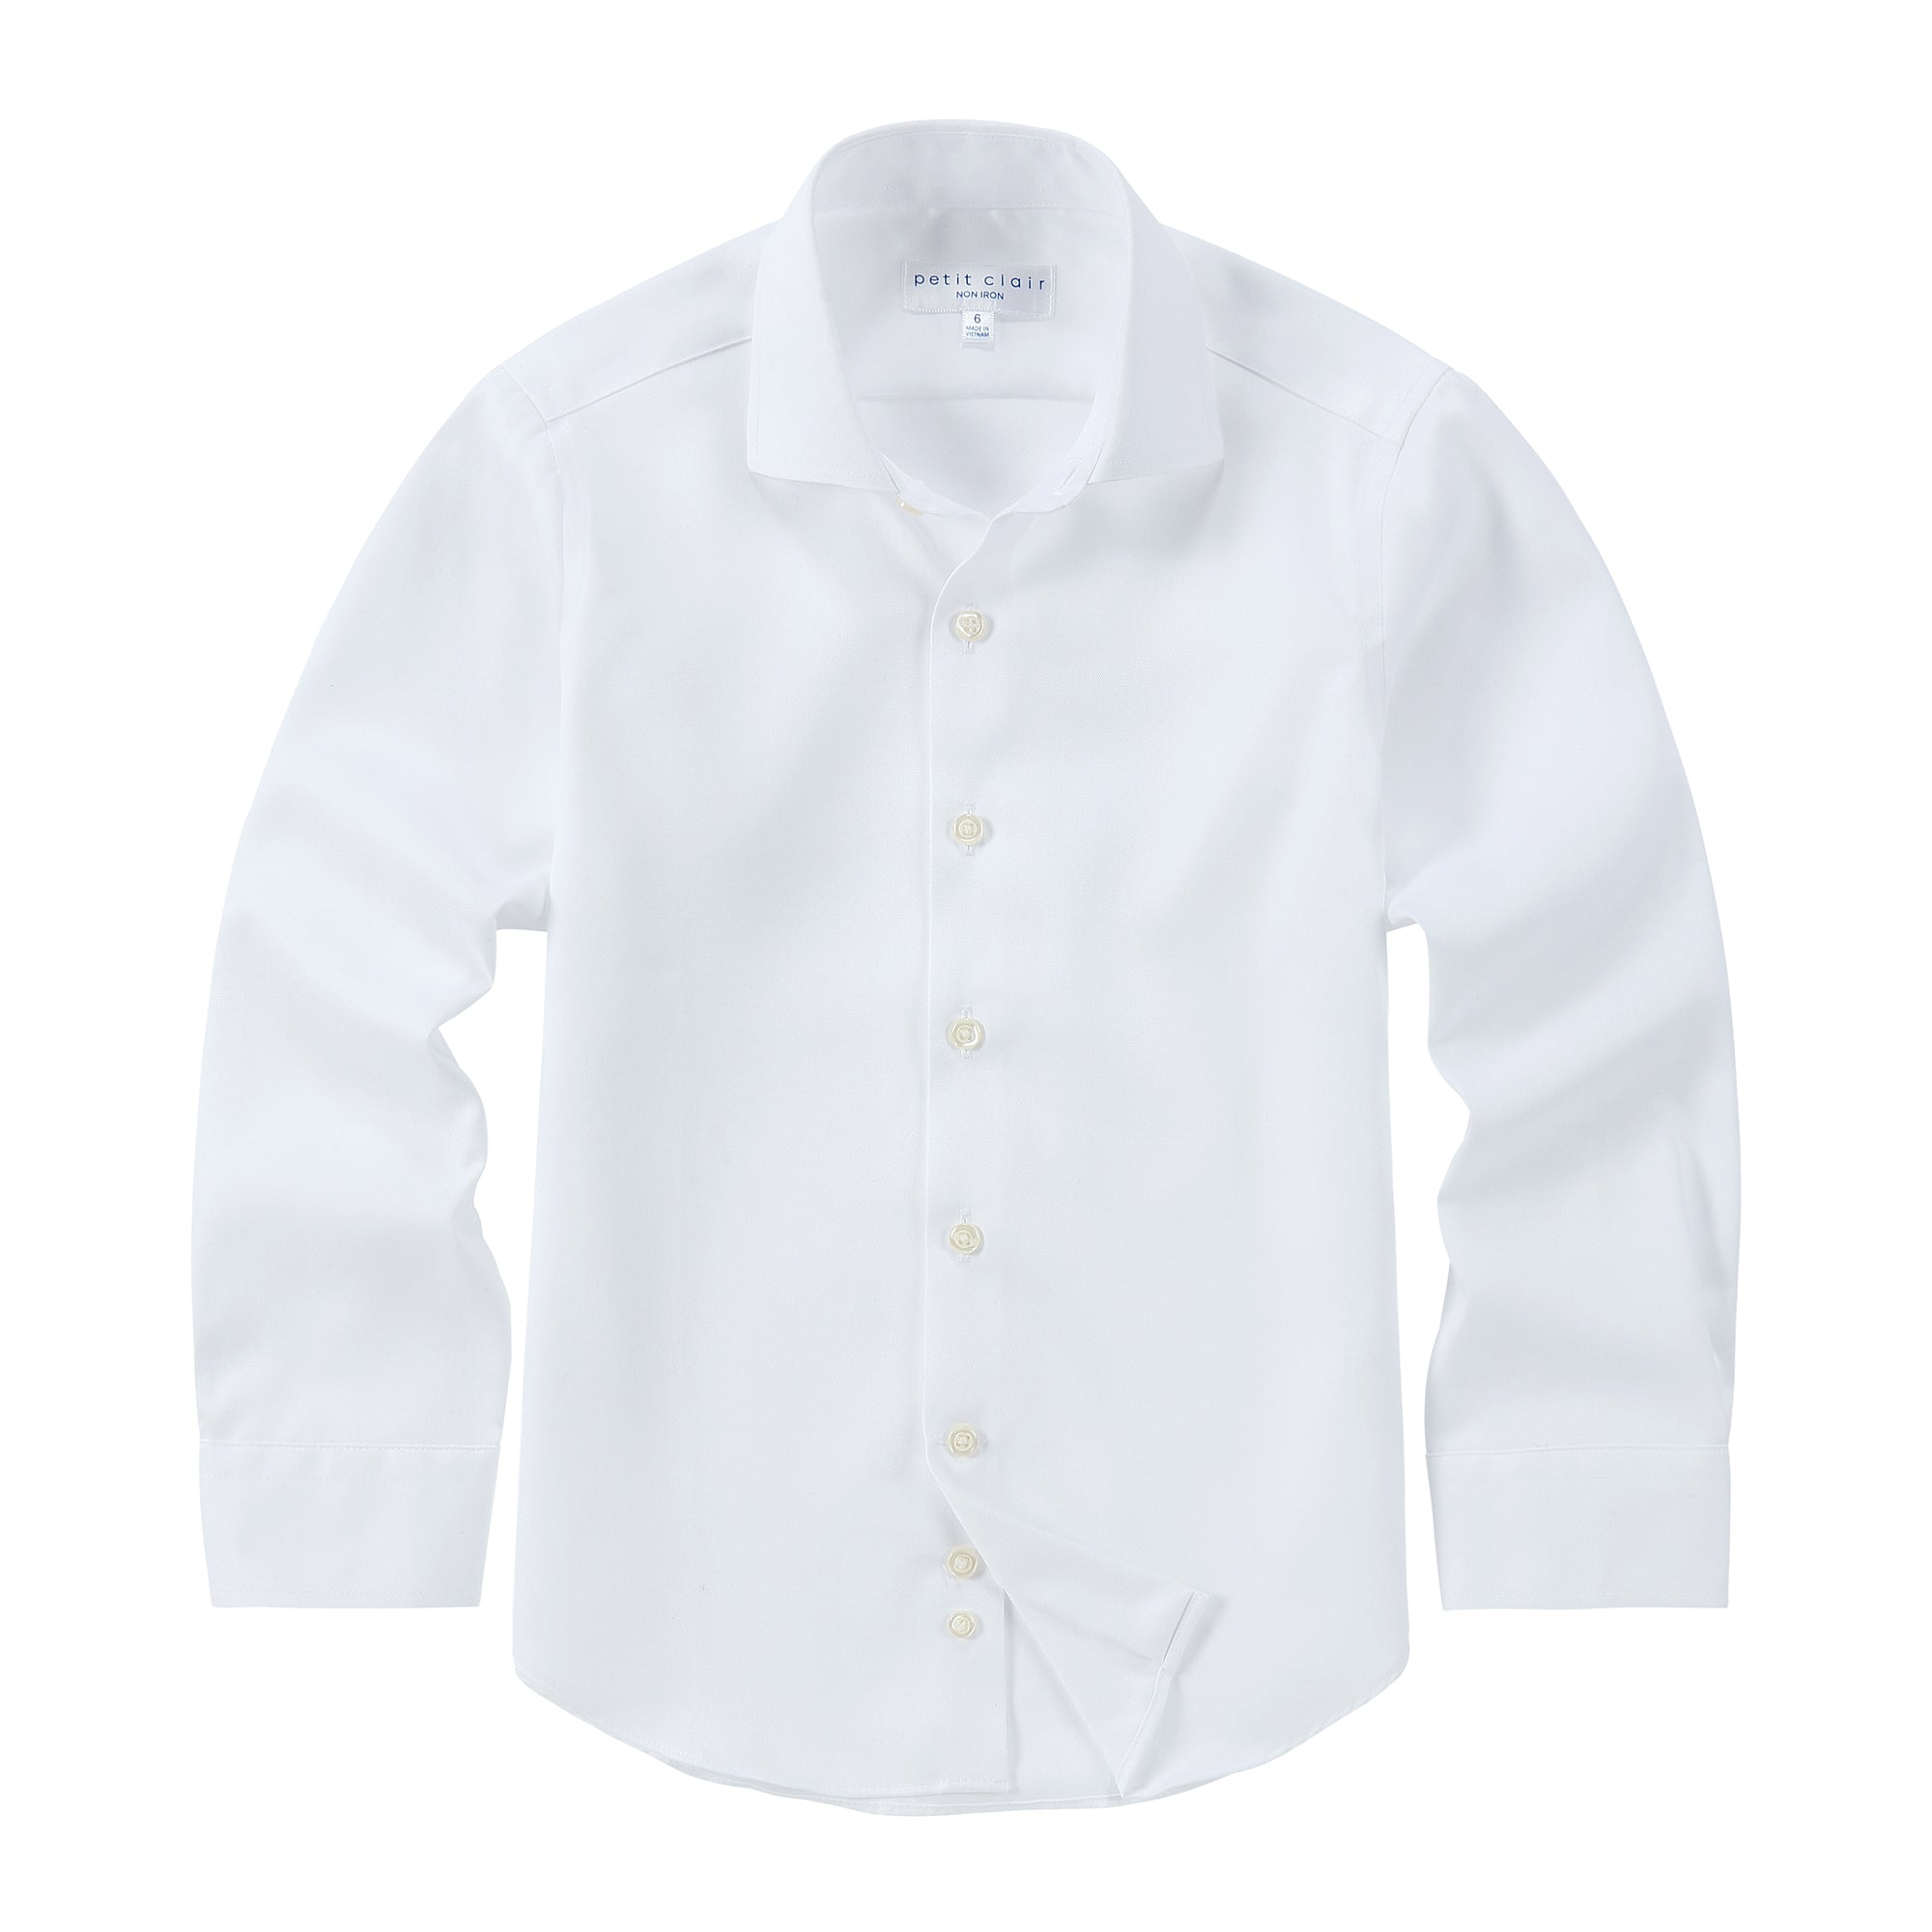 Non-Iron Spread Collar White Shirt